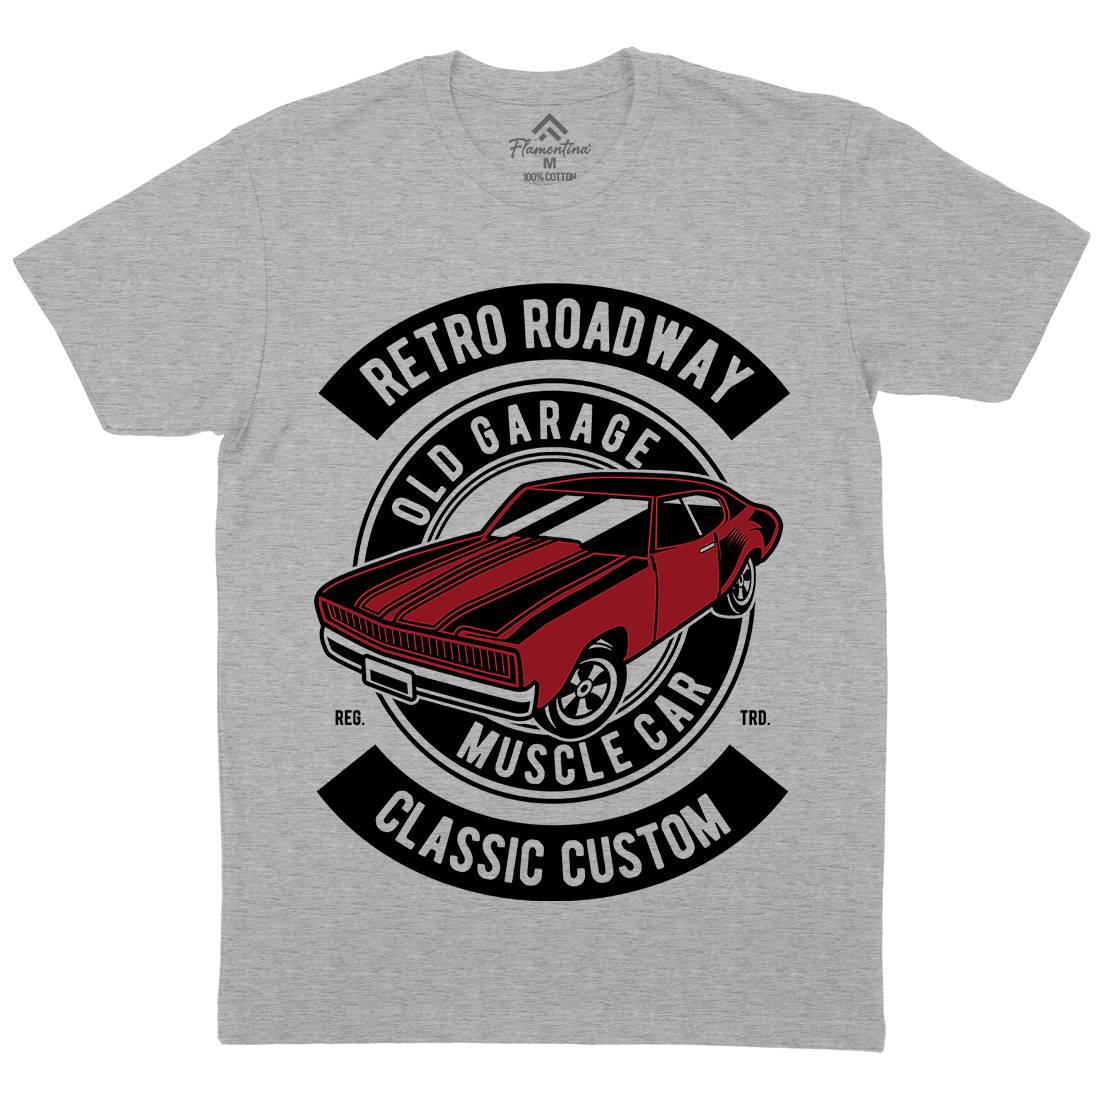 Retro Roadway Mens Organic Crew Neck T-Shirt Cars D568